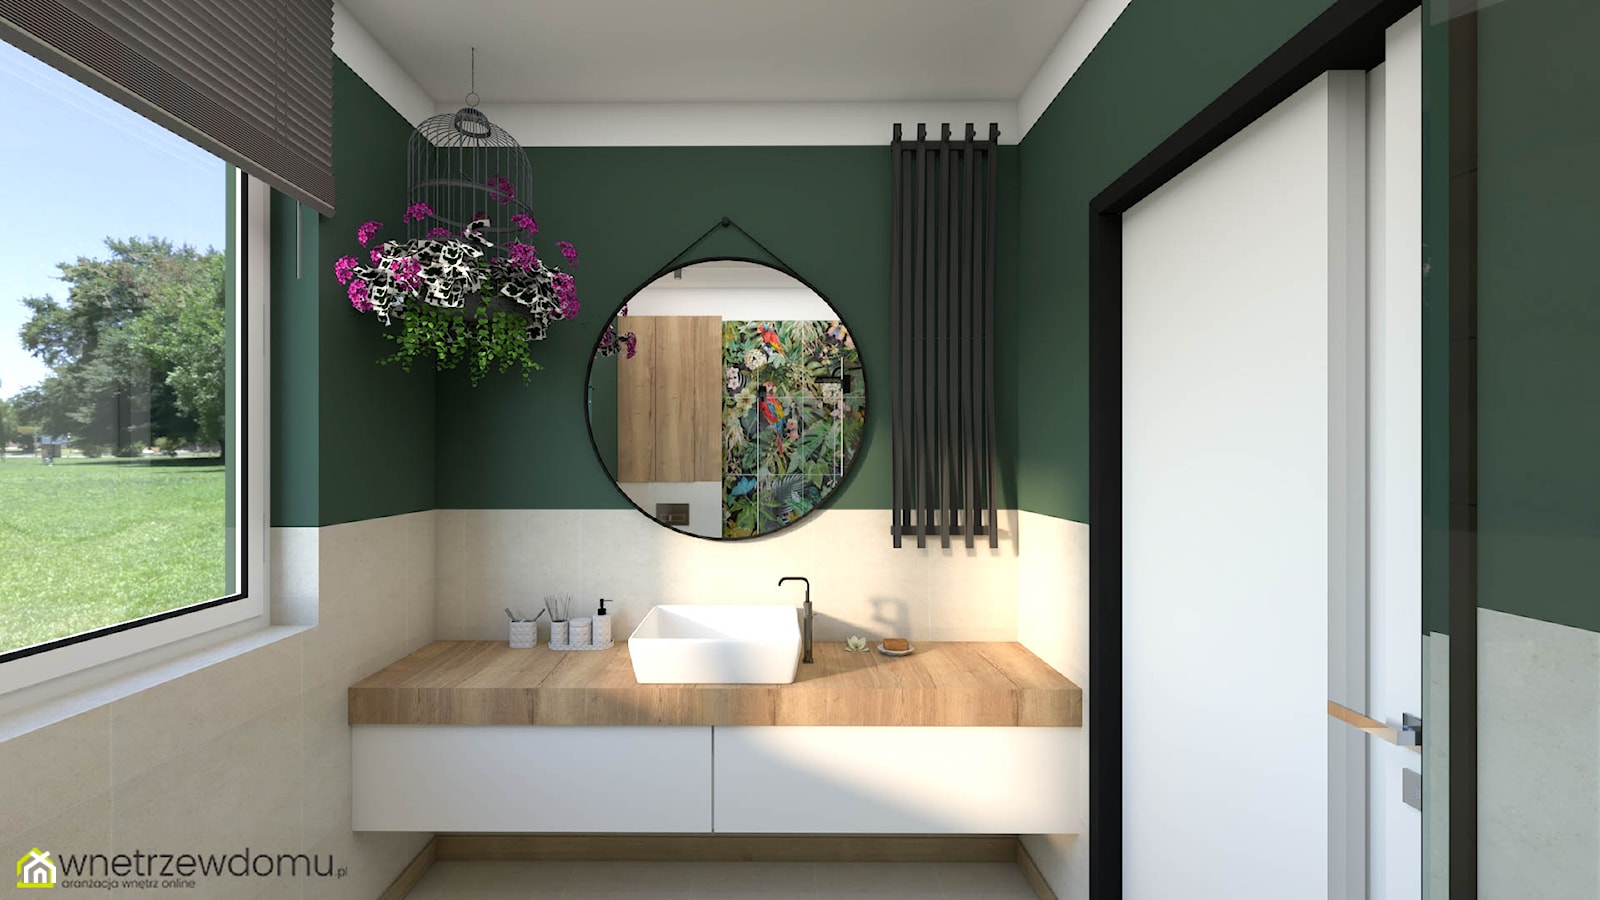 Ciemna zieleń w niewielkiej łazience - zdjęcie od wnetrzewdomu - Homebook